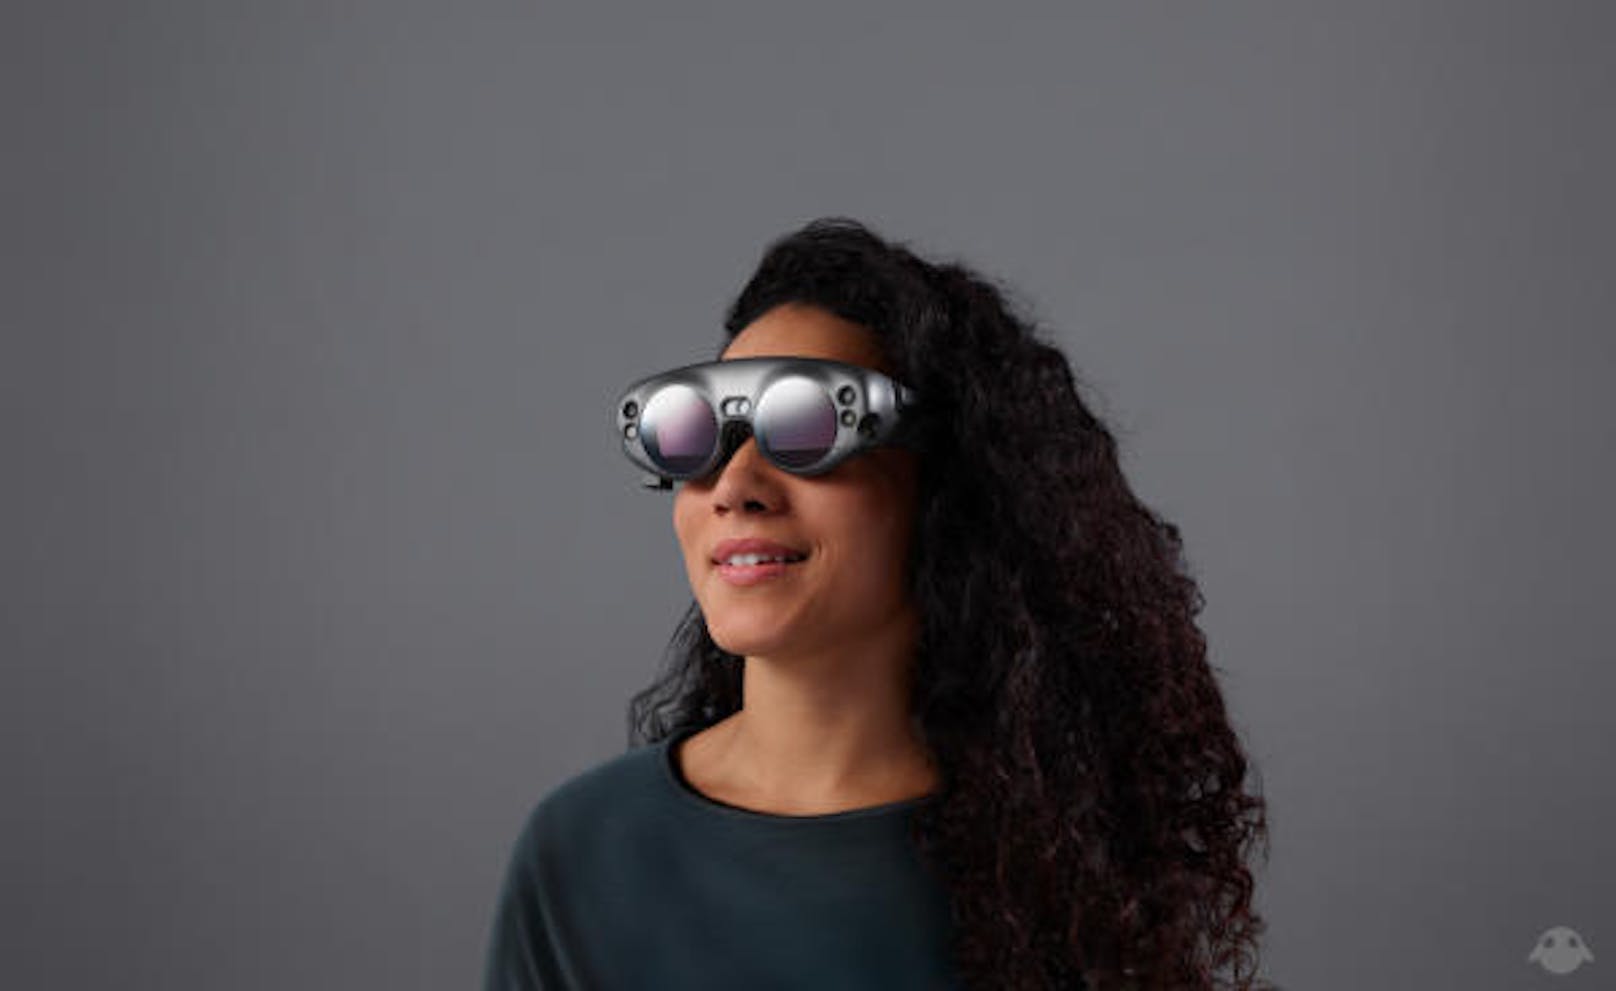 Entwickler sollen die Cyberbrille im nächsten Jahr kaufen können. Wann diese regulär auf den Markt kommt, ist noch nicht klar.